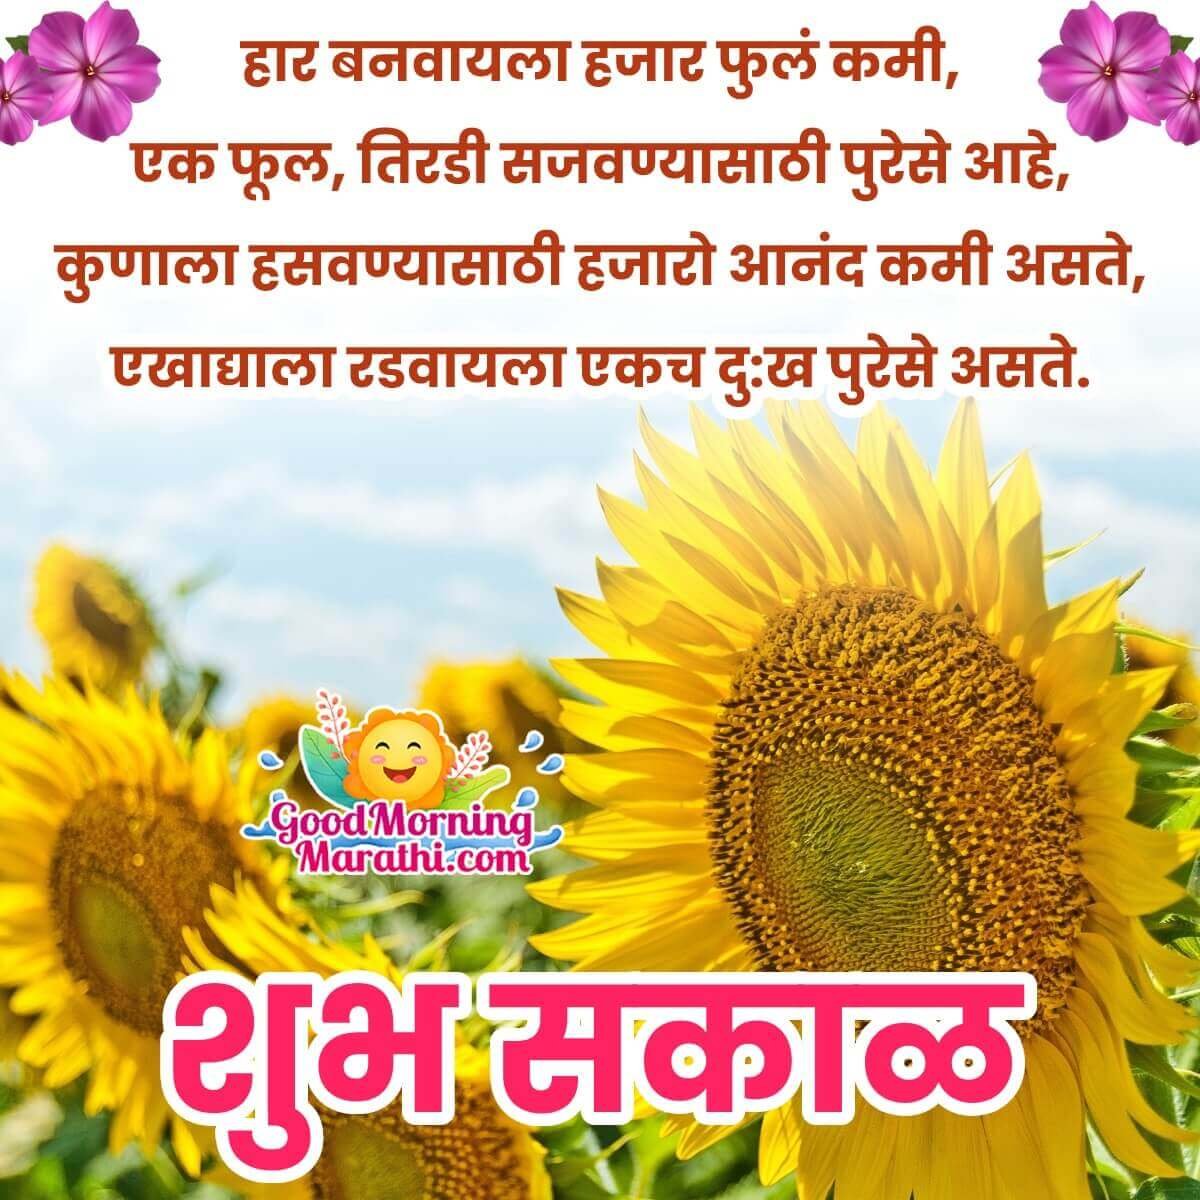 Good Morning Marathi Quotes - Good Morning Wishes & Images In Marathi